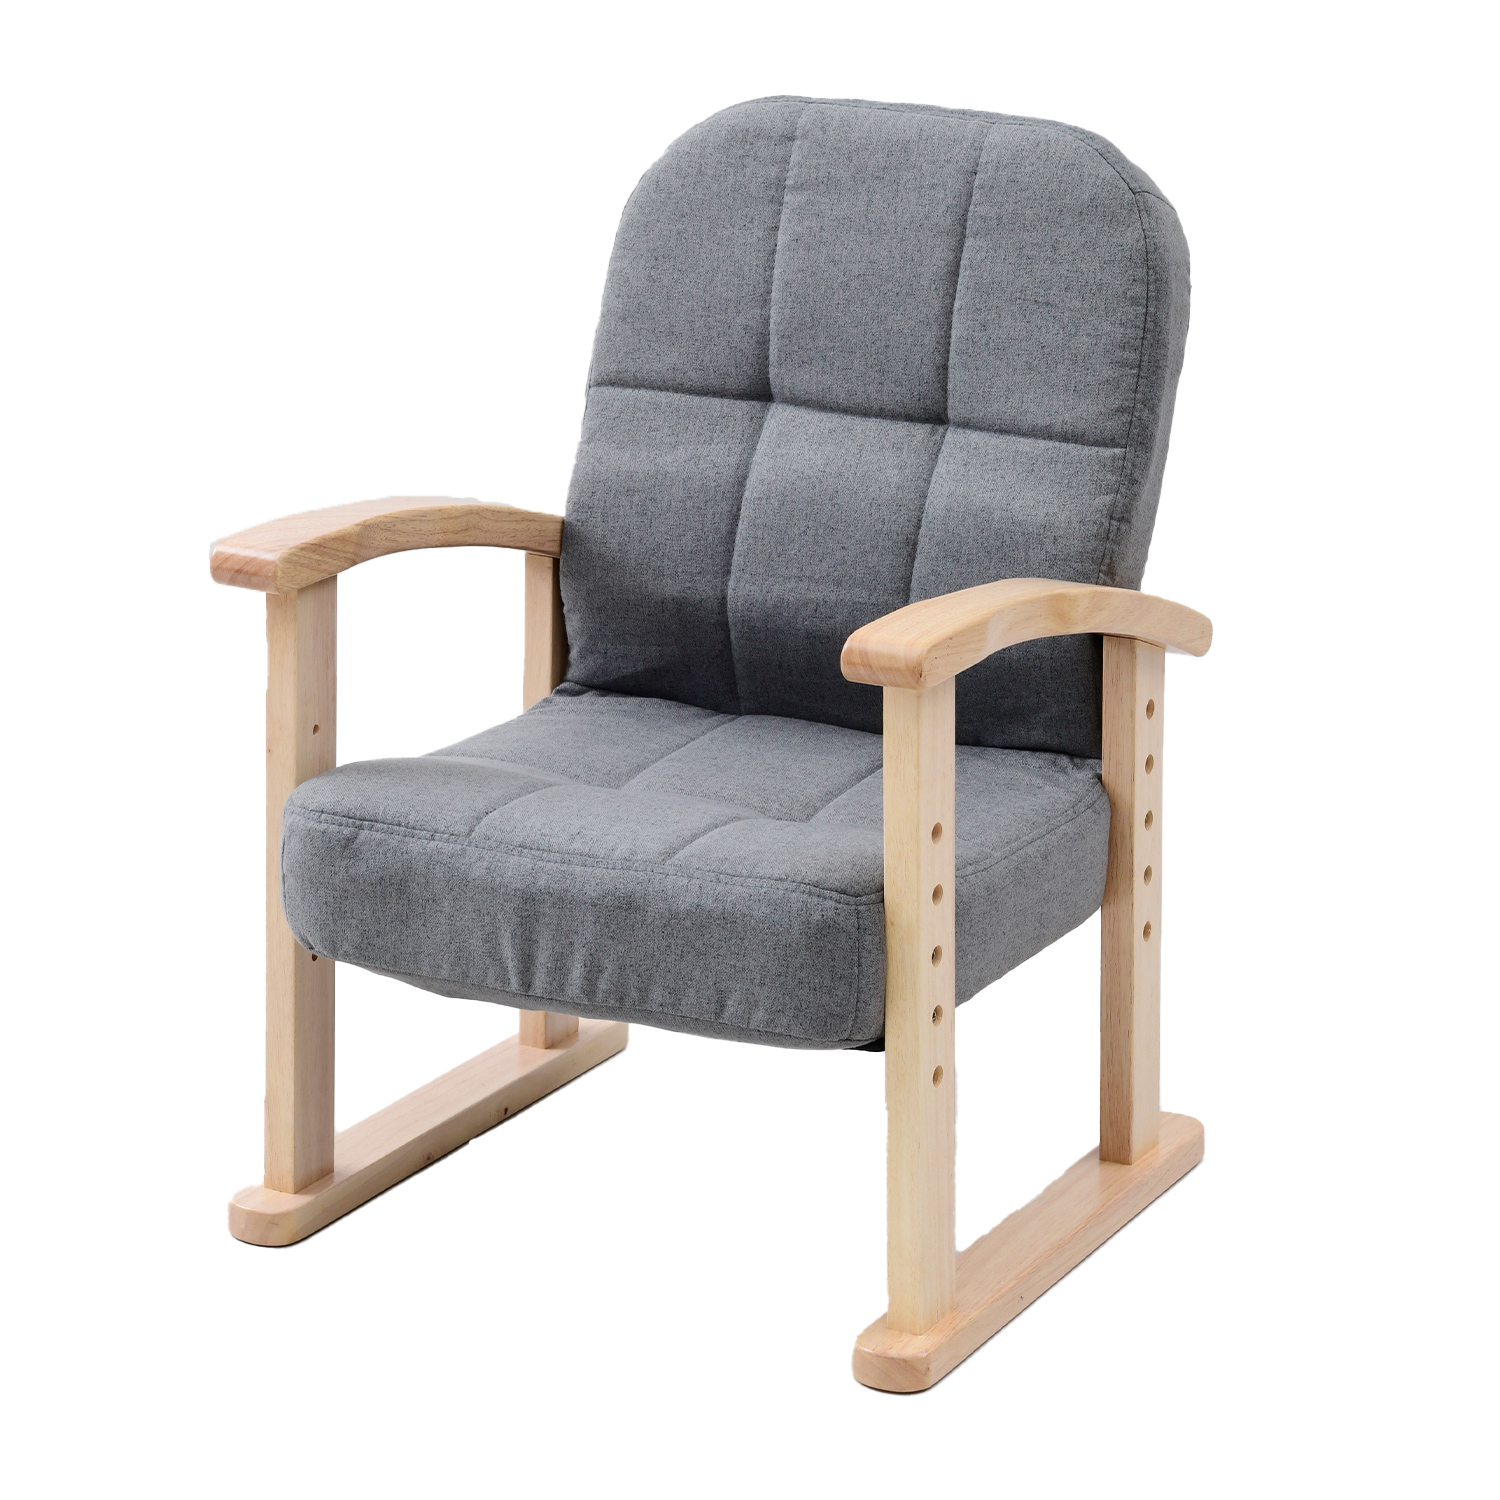 リクライニングチェア 座椅子 一人掛け 組立不要 高さ調節可 幅53.5 奥行54-71 高さ66.5-84.5cm KMZC-55 リビングチェア  リラックスチェア チェア 椅子 イス